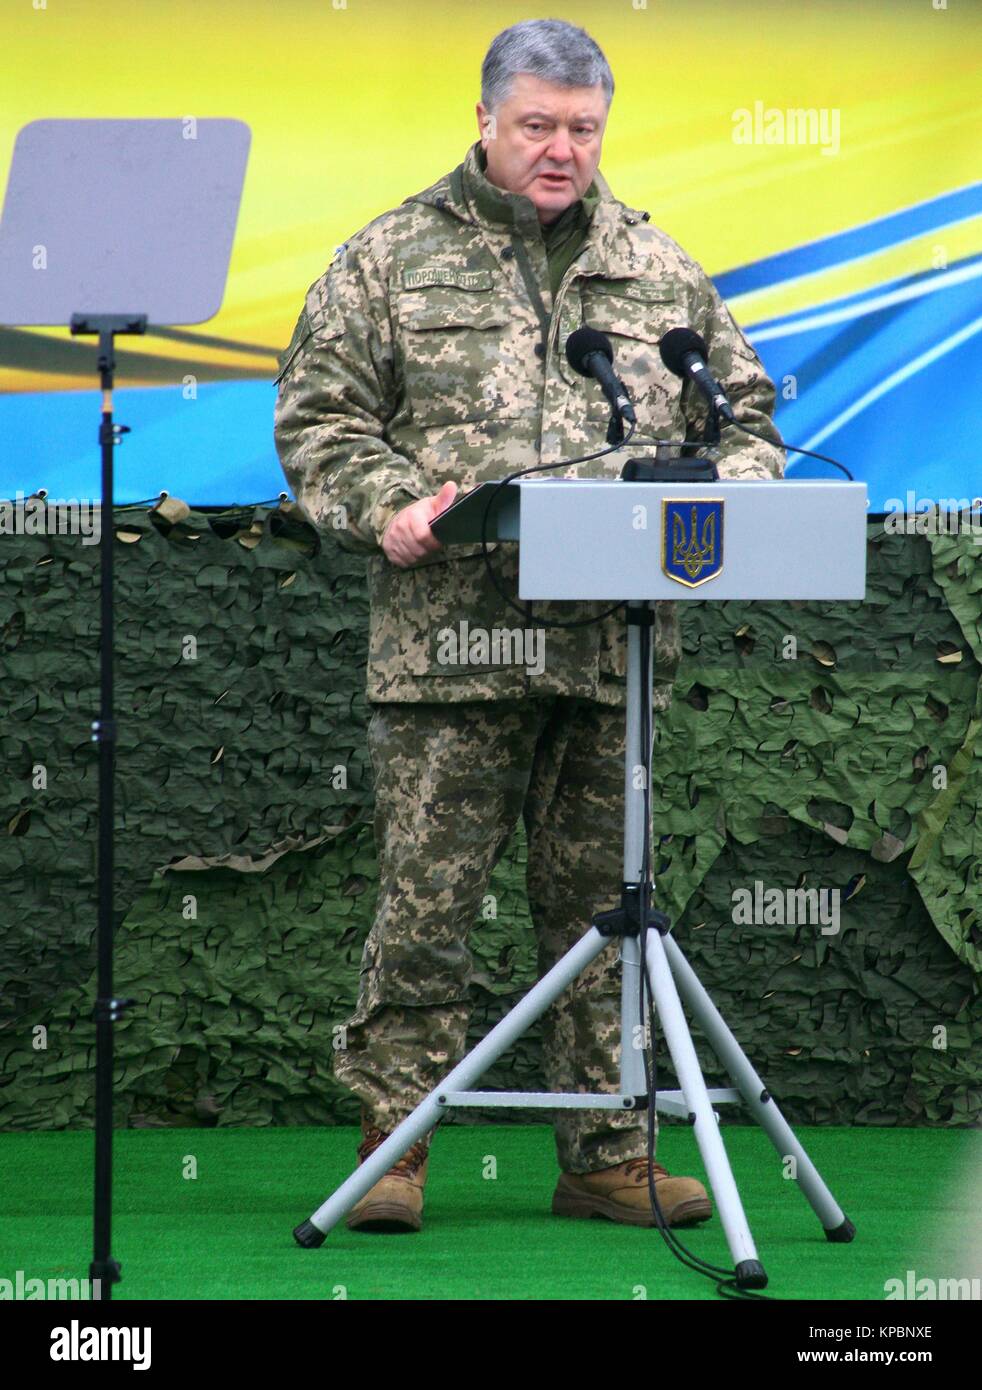 Der Präsident der Ukraine Petro Poroschenko spricht mit US-amerikanischen, kanadischen, litauischen, polnischen und ukrainischen Soldaten während der ukrainischen Streitkräfte Tag Feier am Yavoriv Combat Training Center am 6. Dezember in Yavoriv, Ukraine 2017. Stockfoto